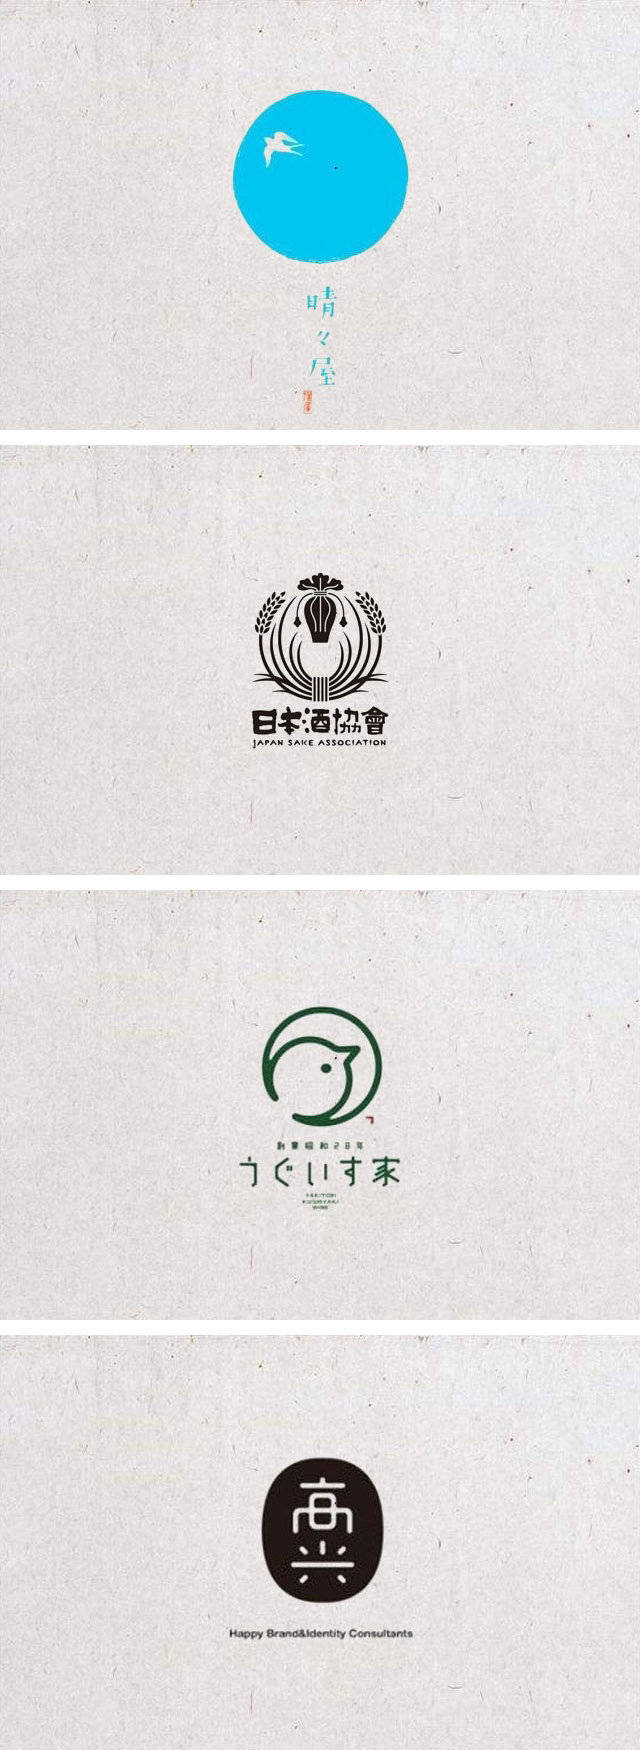 日式有韵味的logo设计一组